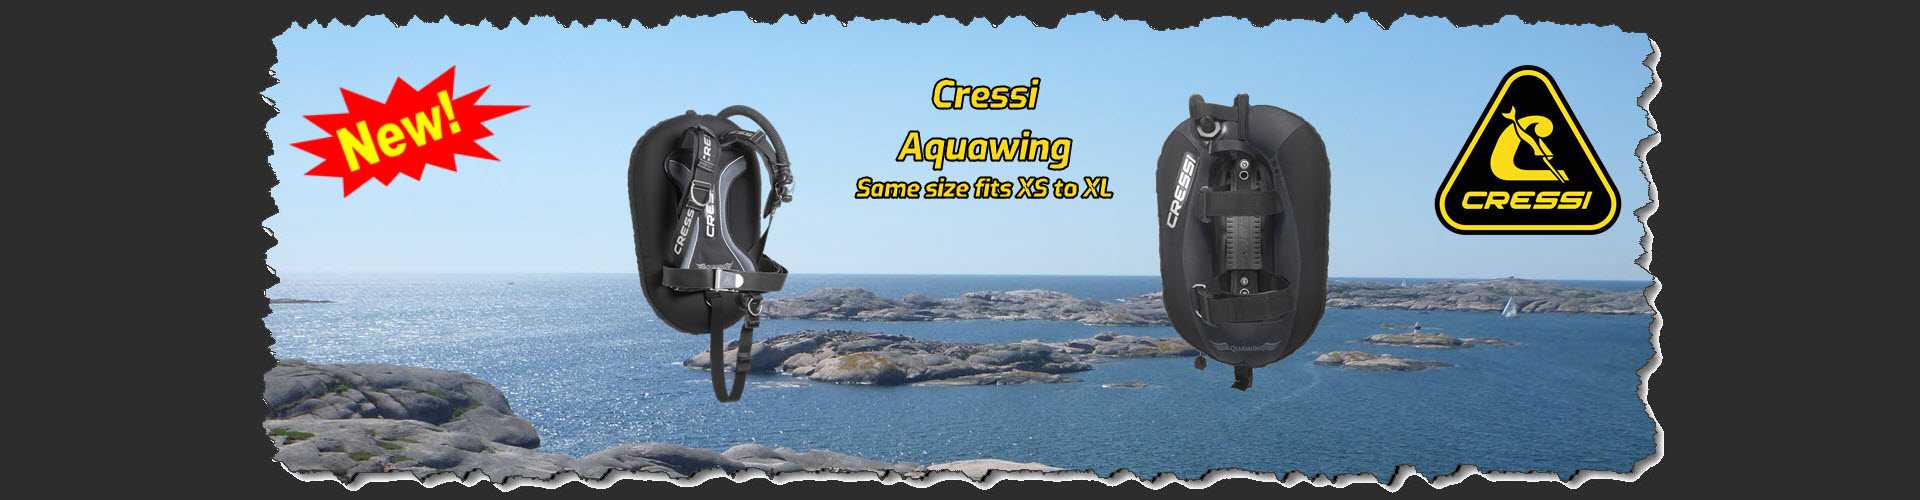 Cressi Aquawing